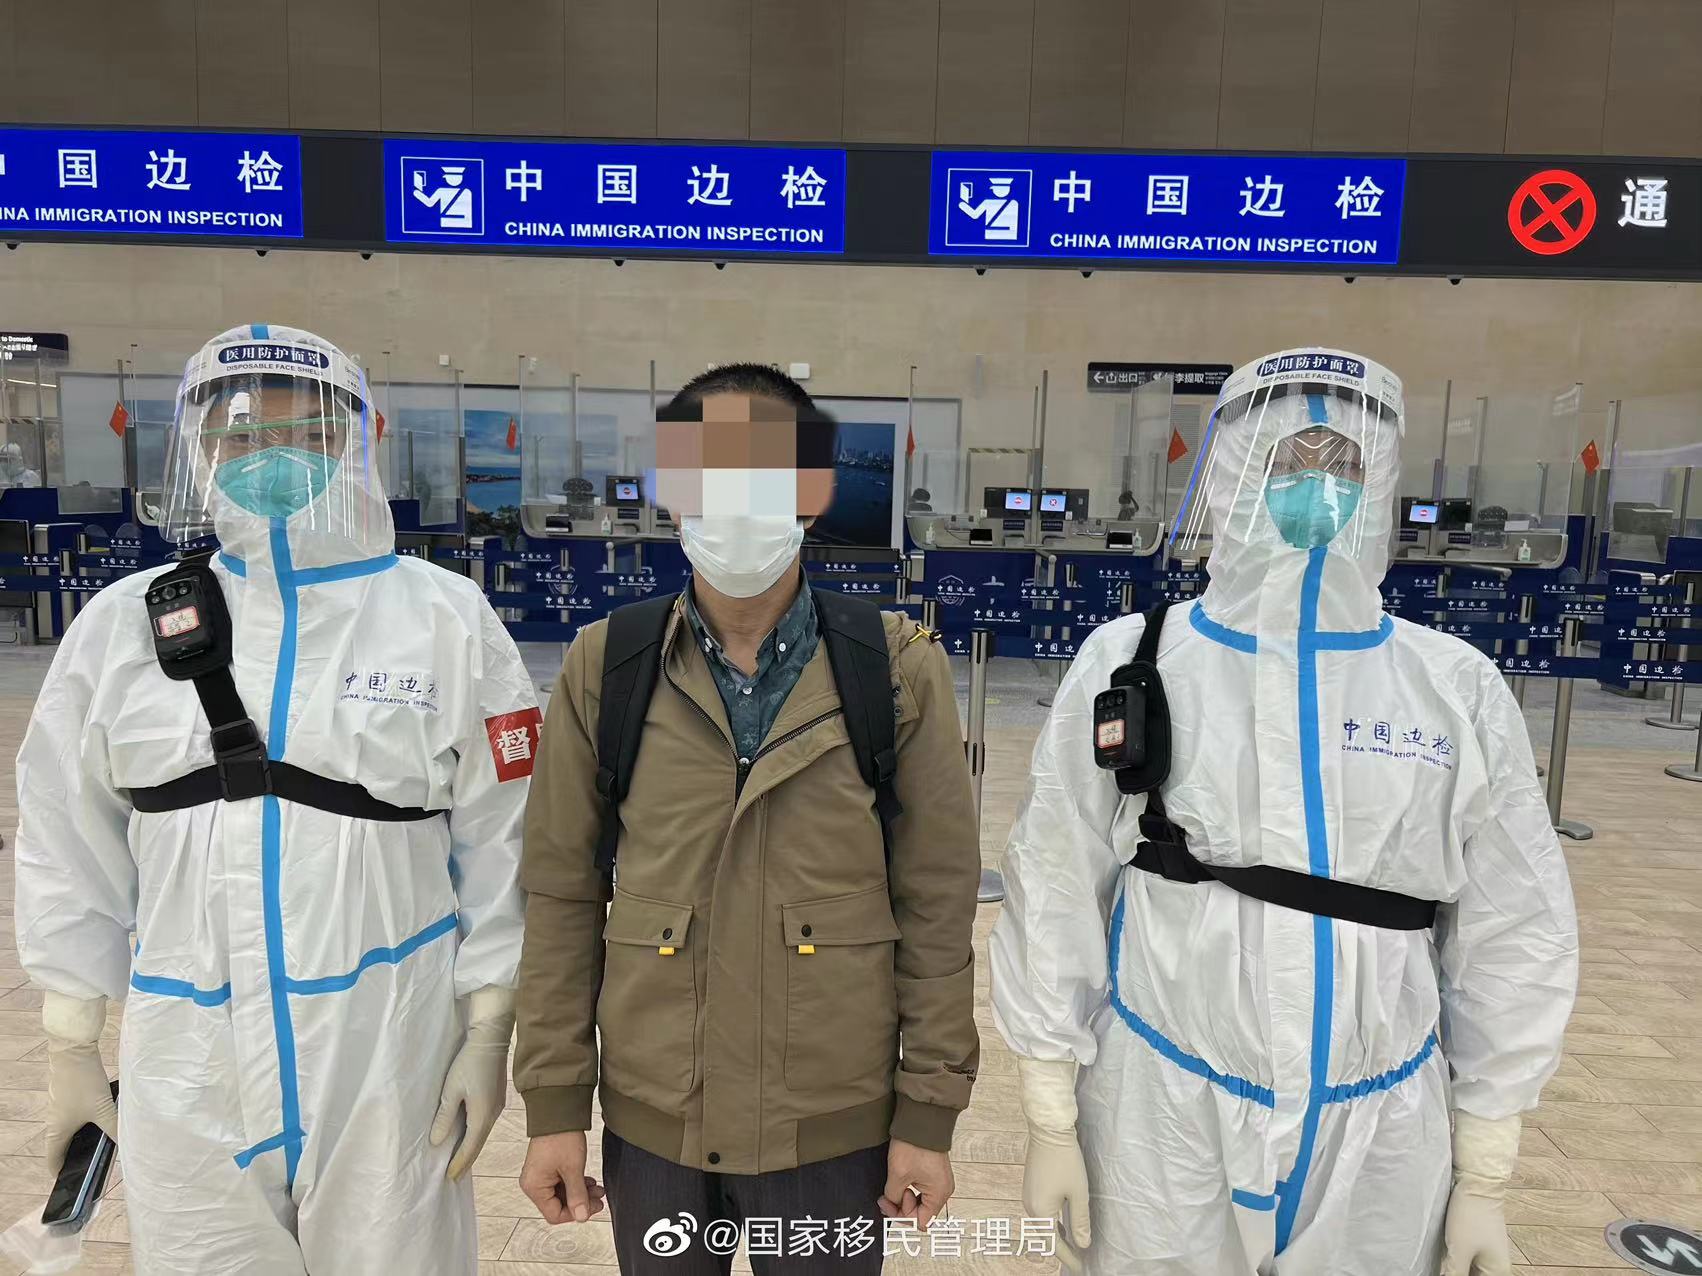 青岛机场边检站连续查获两名在逃人员 已移交相关部门进一步处理